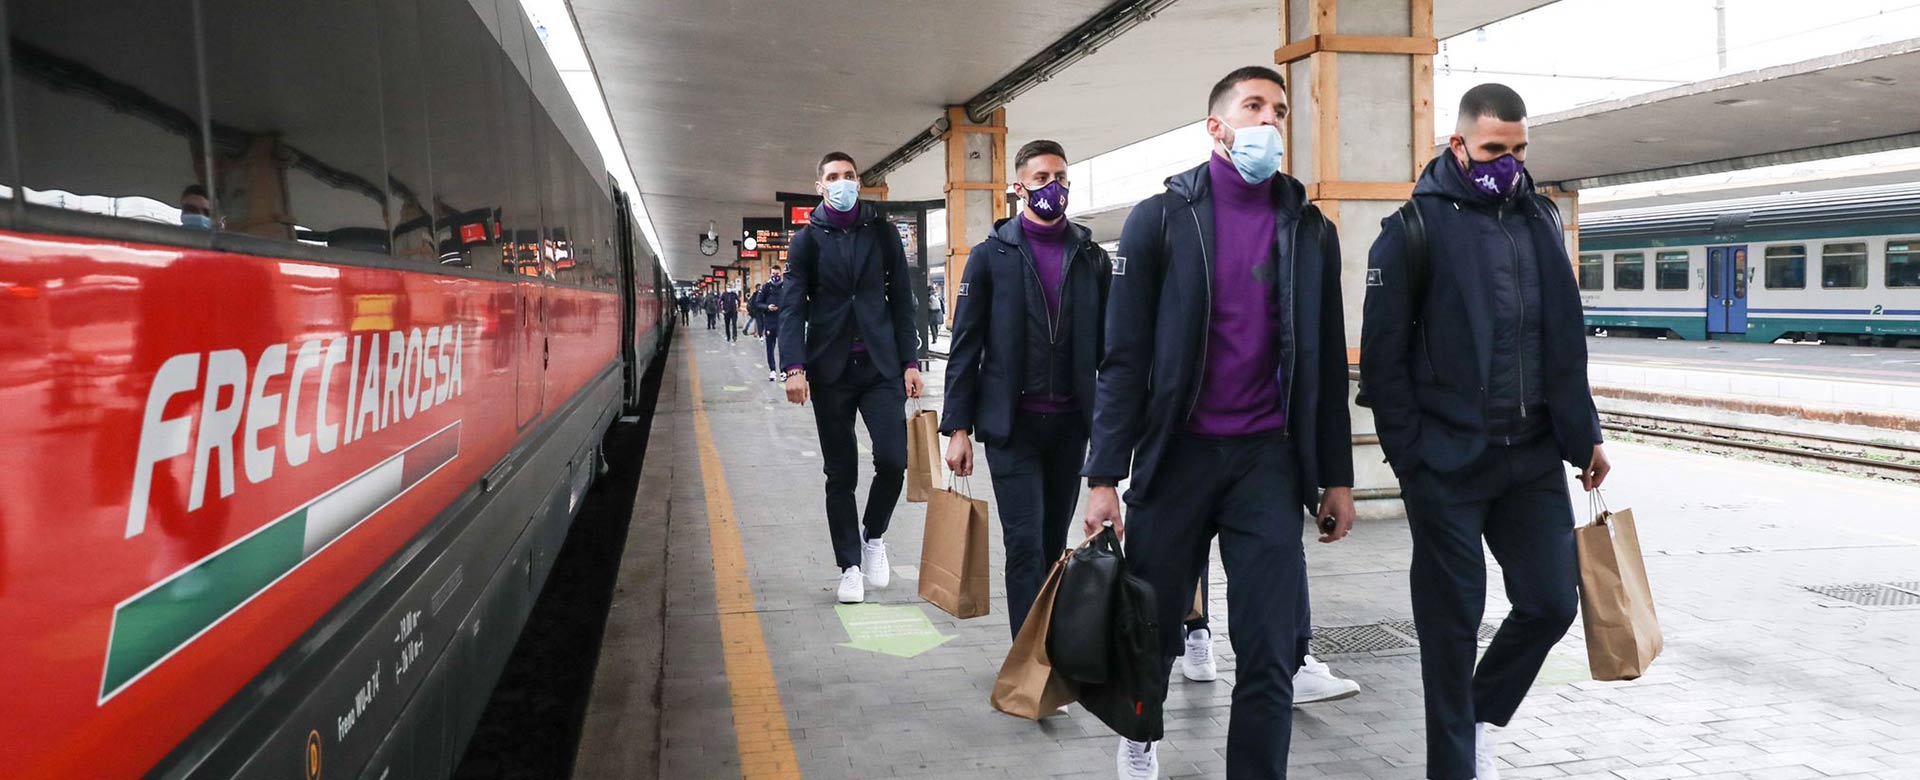 I calciatori della Fiorentina salgono a bordo del Frecciarossa in direzione Torino, in vista della gara di Serie A contro il Torino